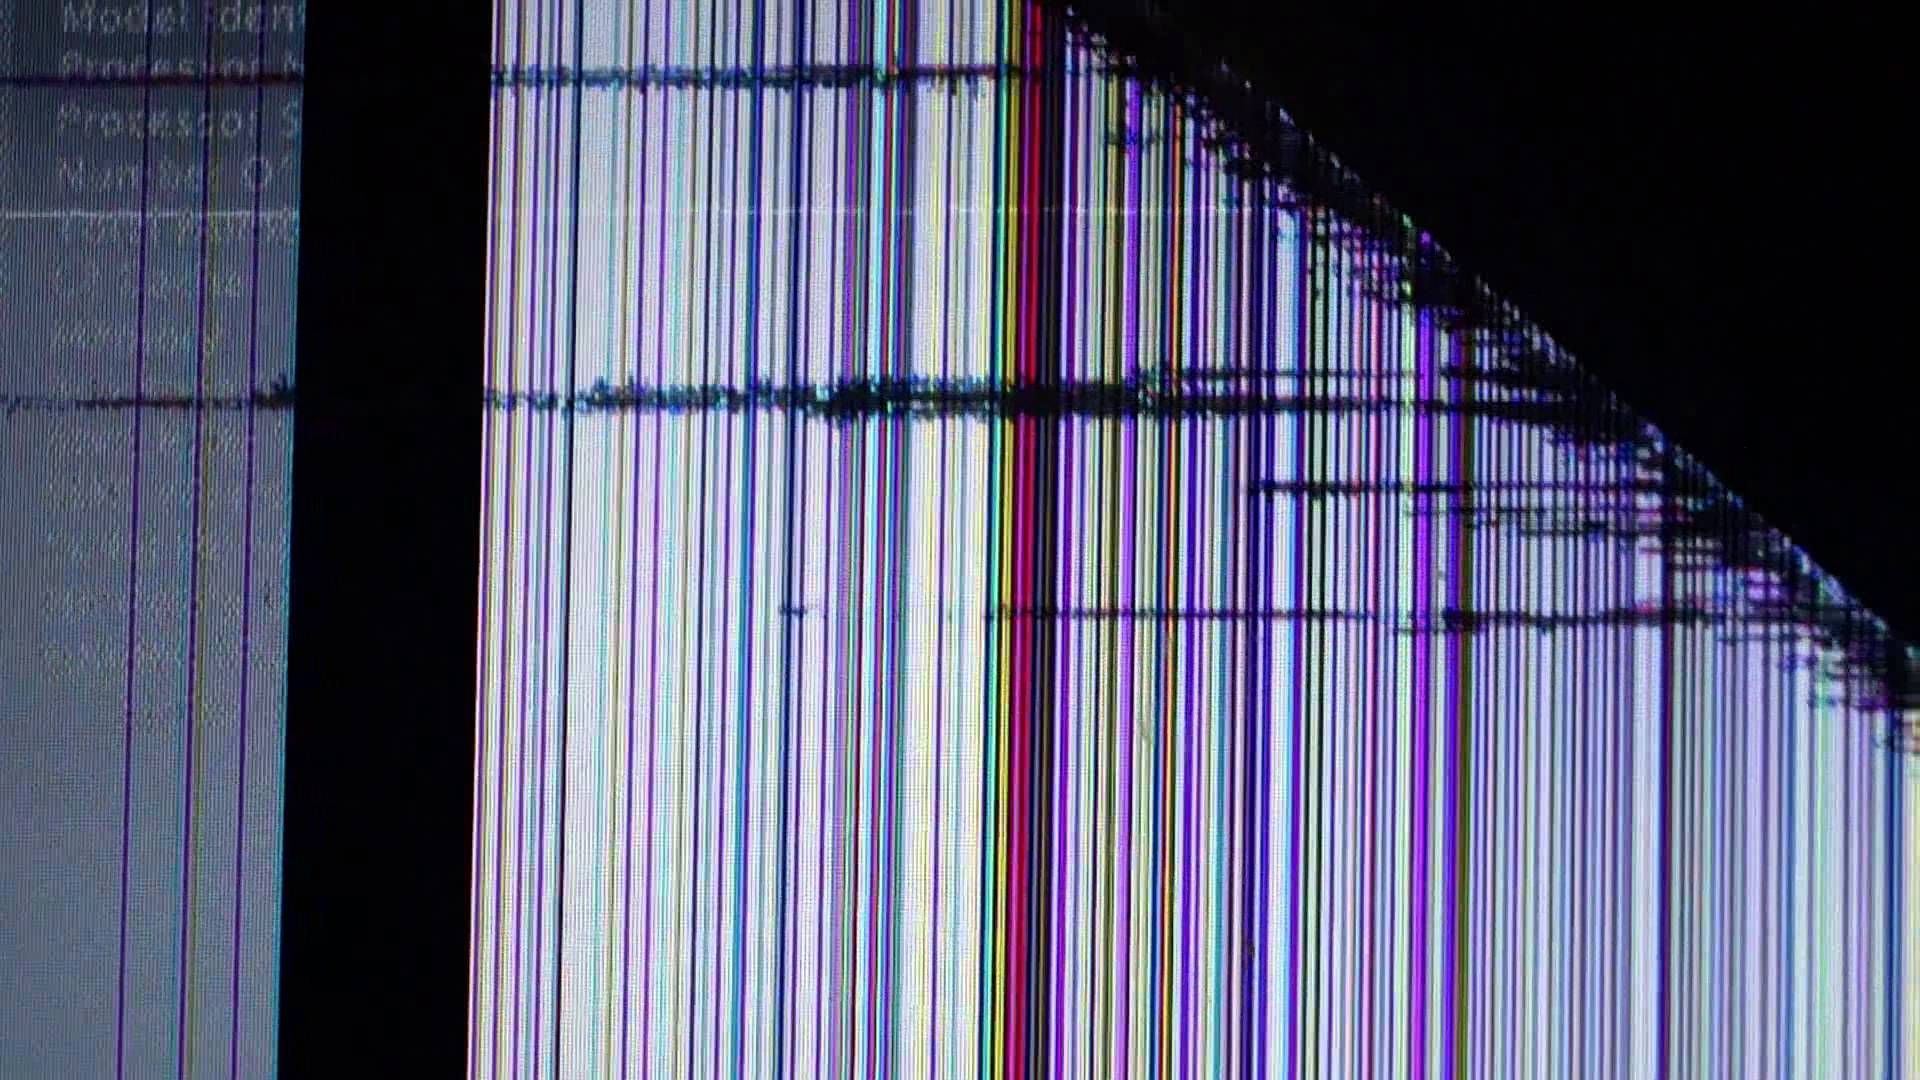 Broken Screen Wallpaper 4k, 1920p 1080p, 1440p, 2560p Crack phone screen wallpaper